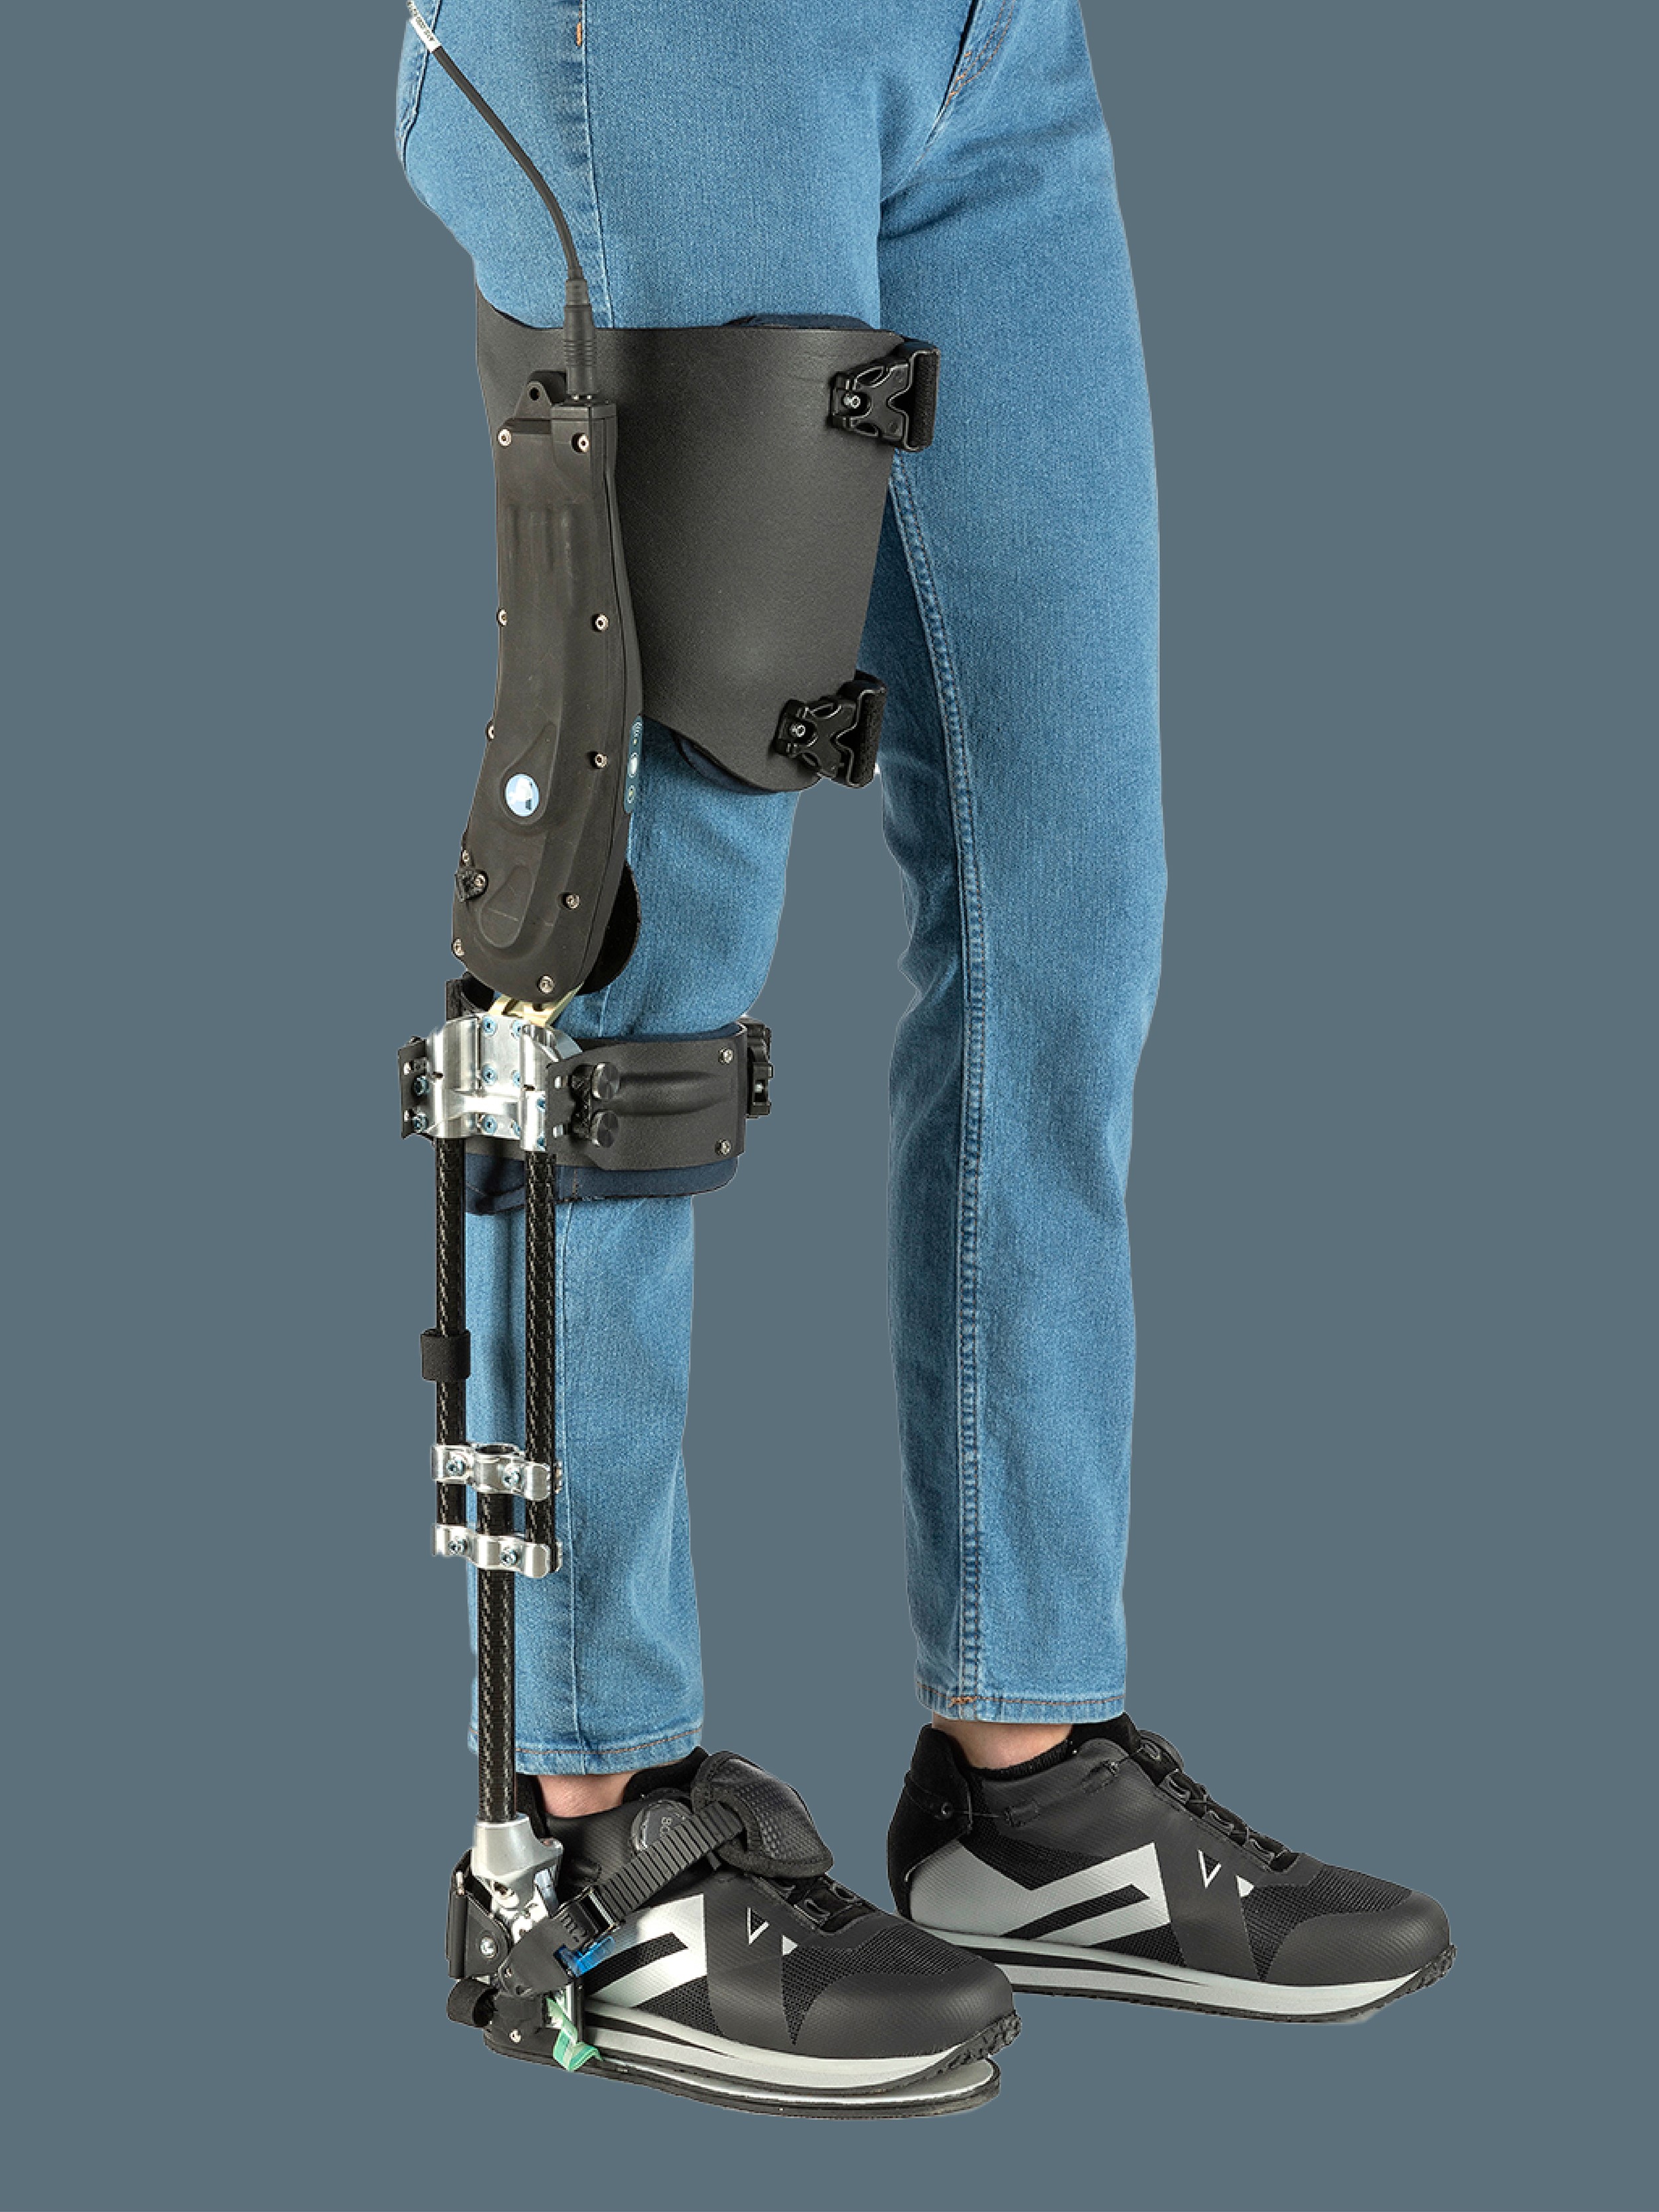 >Agilik, die robotische Orthese, die die persönliche Mobilität verbessert